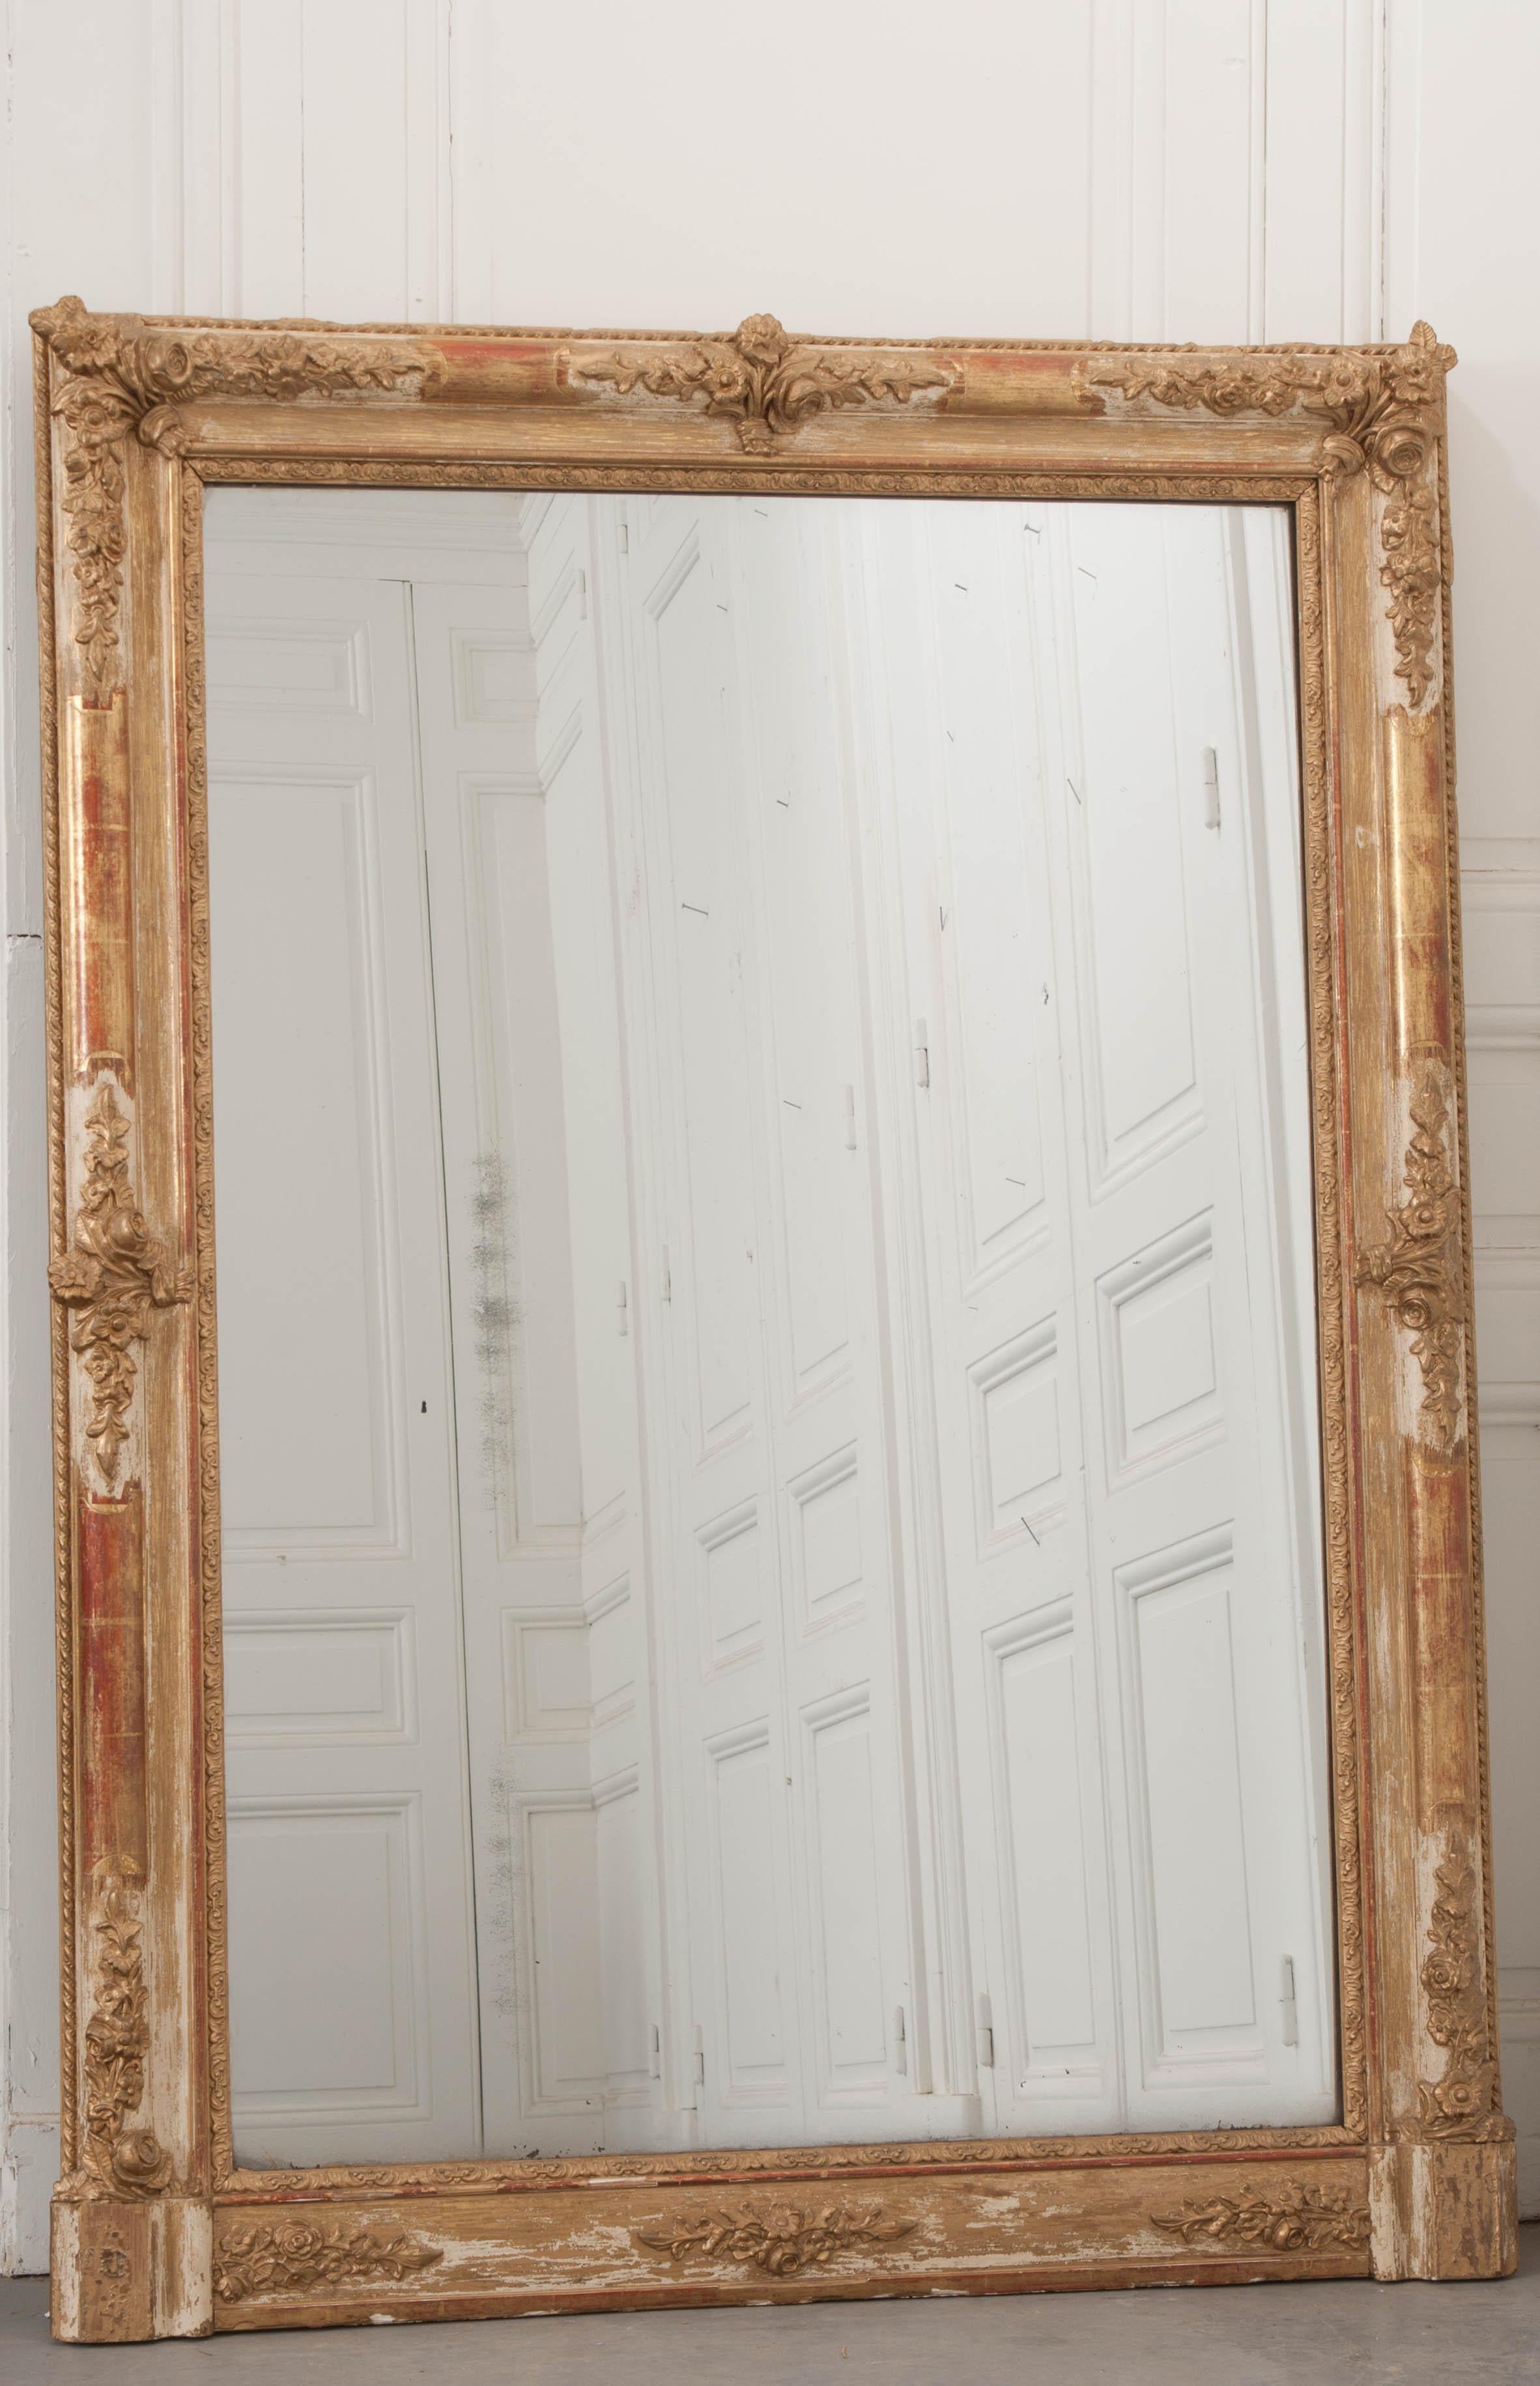 Un brillant miroir en bois doré du XIXe siècle, fabriqué en France vers 1870. Le miroir est grand et beau. Le cadre est orné de bouquets de fleurs que l'on retrouve dans ses coins et sur ses côtés. La finition dorée a subi une certaine perte due au